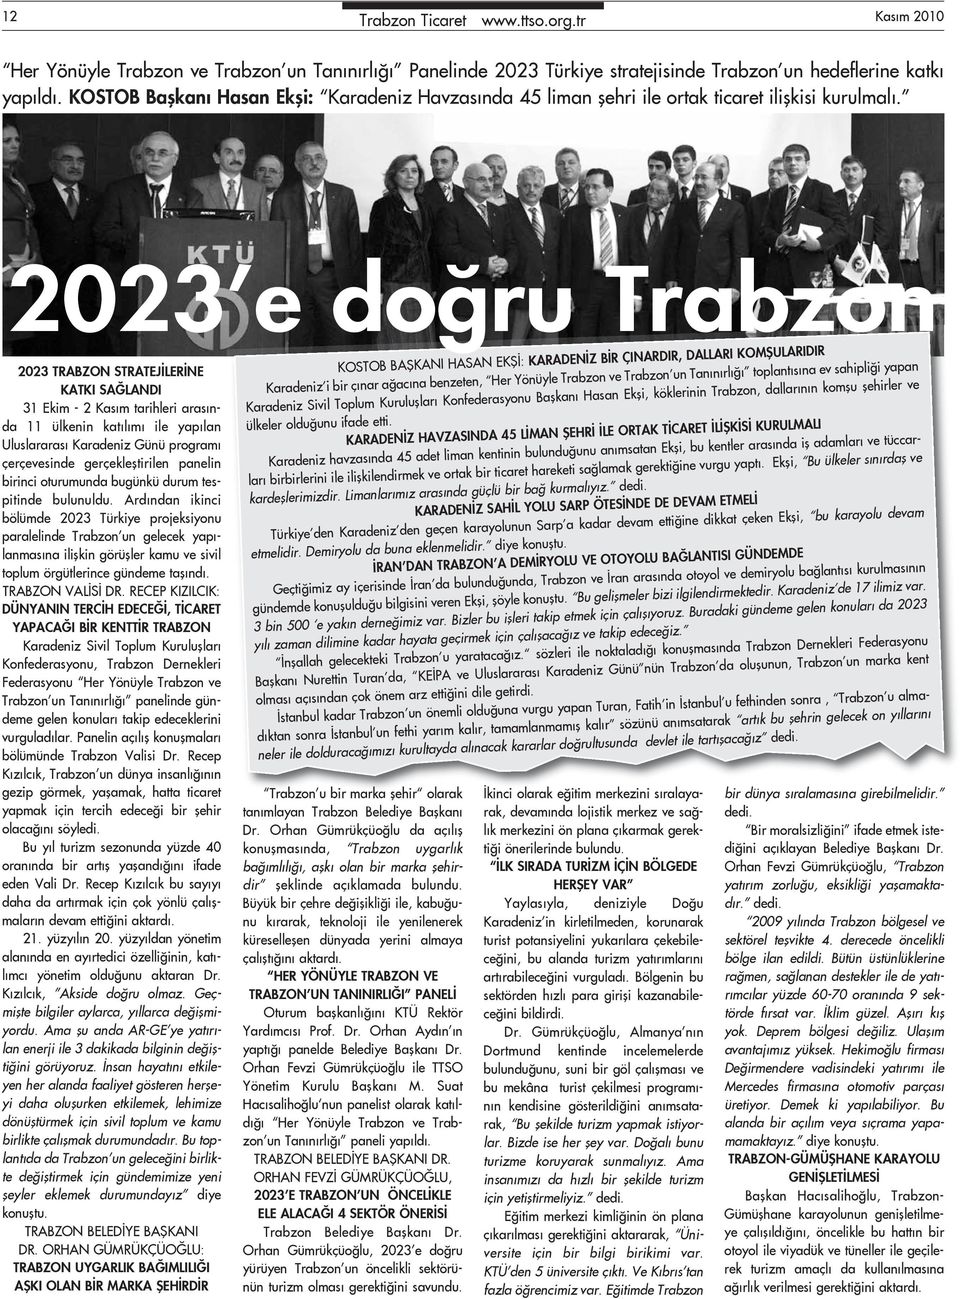 2023 e doğru Trabzon 2023 TRABZON STRATEJİLERİNE KATKI SAĞLANDI 31 Ekim - 2 Kasım tarihleri arasında 11 ülkenin katılımı ile yapılan Uluslararası Karadeniz Günü programı çerçevesinde gerçekleştirilen